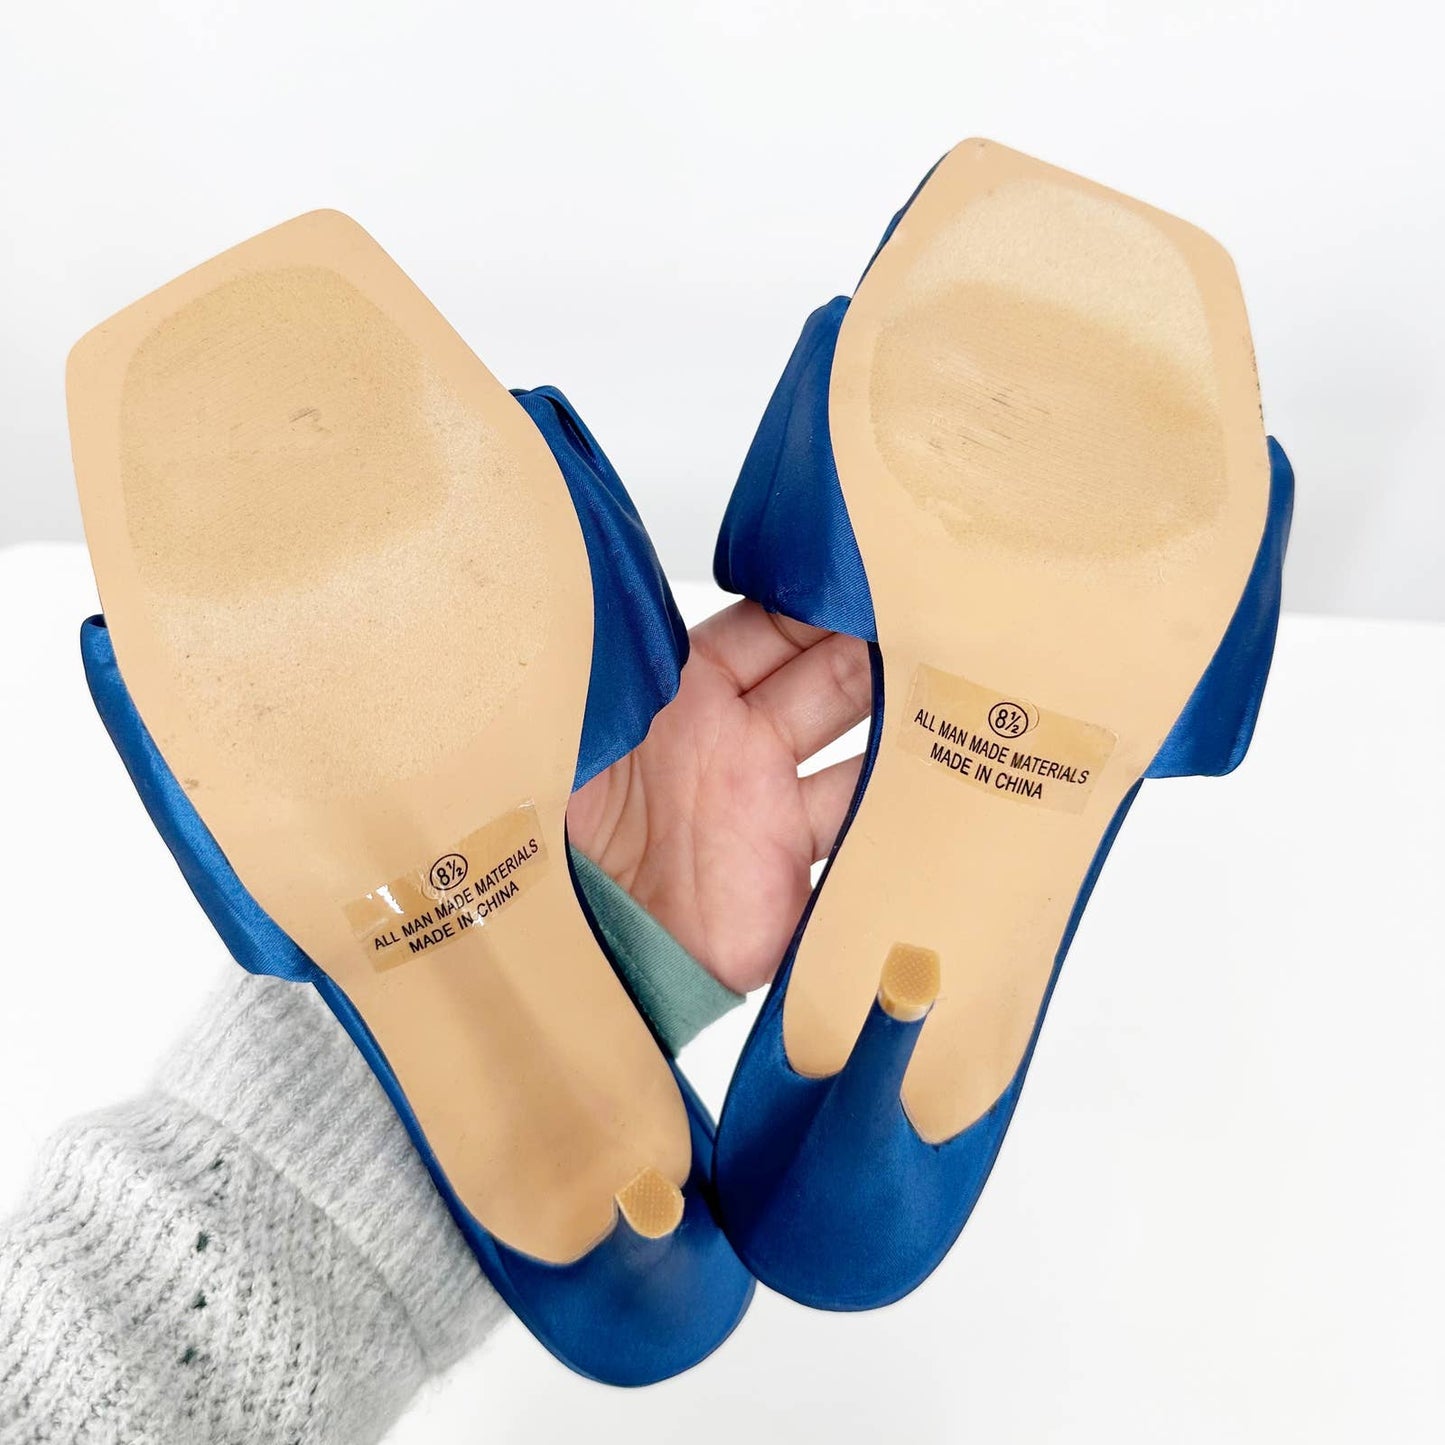 Lulus Reecey Navy Blue Satin Square Toe Mule Heel Sandals 8.5